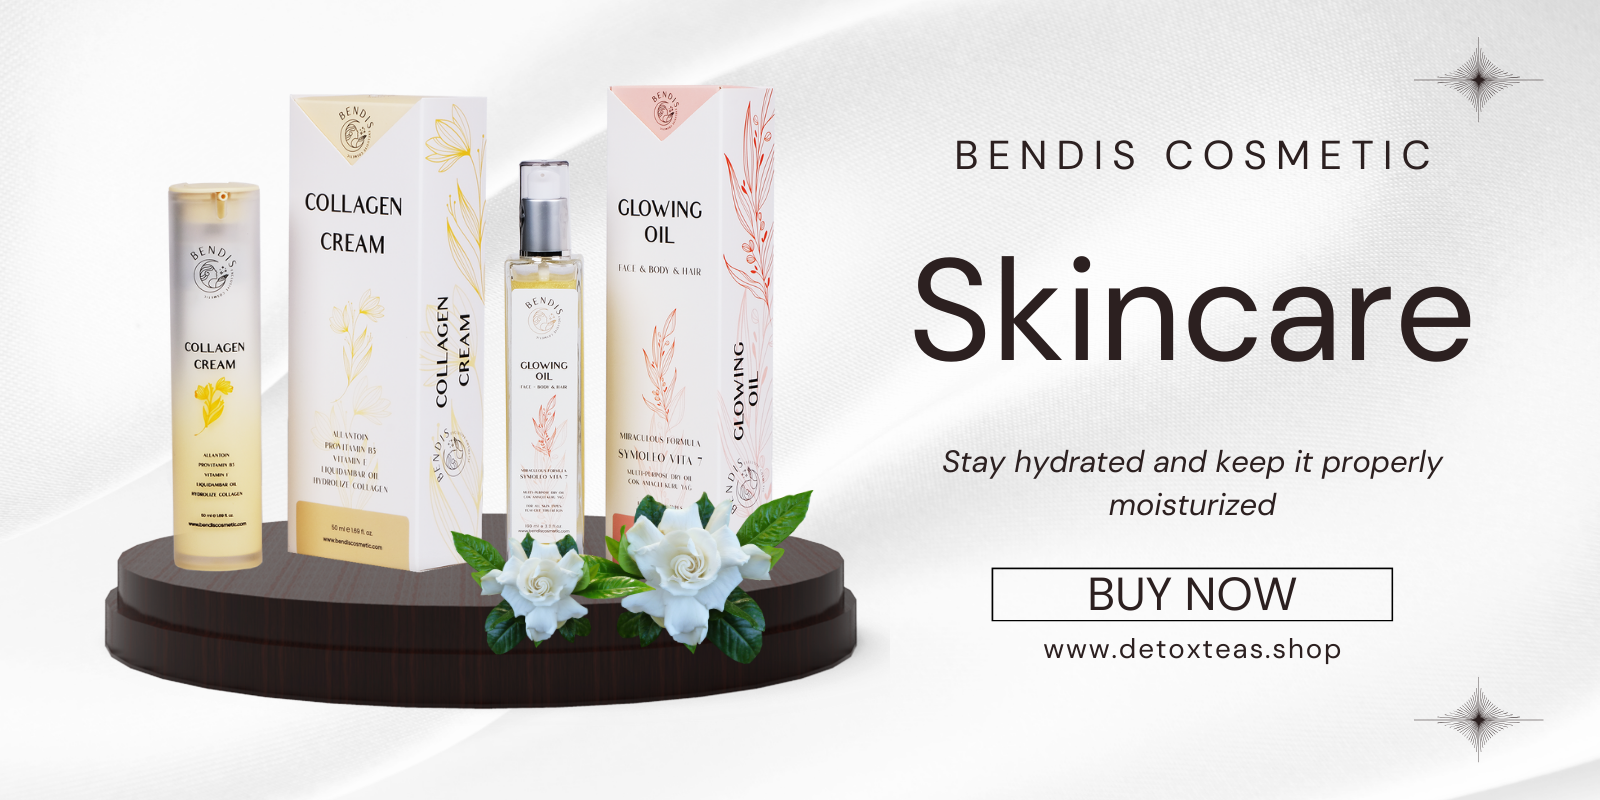 bendis-cosmetic-homepage-grid-en